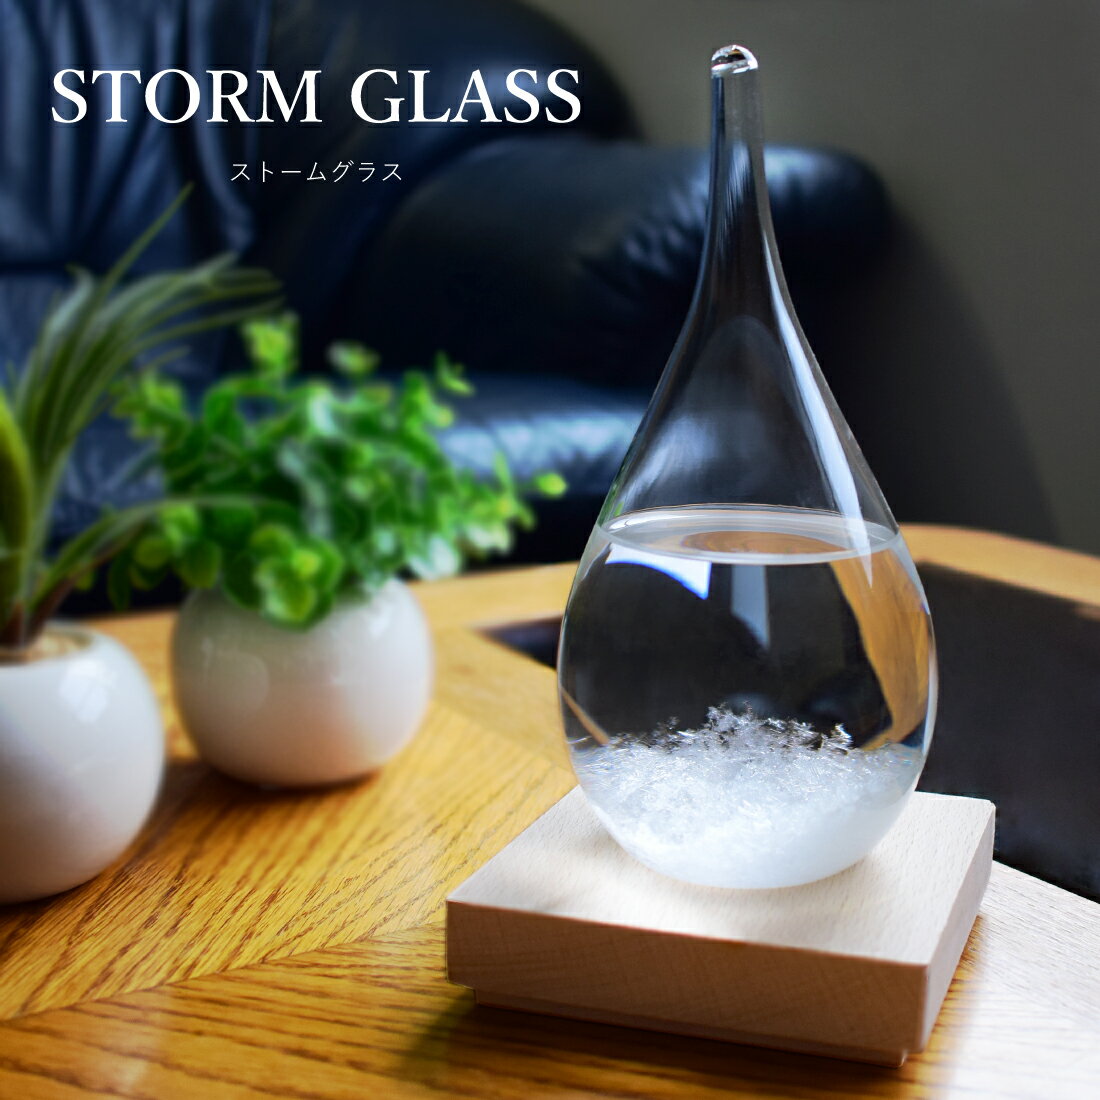 ストームグラス ストームグラス ガラス 天気予報ボトル ストーム瓶 Large 気象予報器 結晶観察器 しずく型 水滴状 インテリア 小物 贈り物 プレゼント 置物